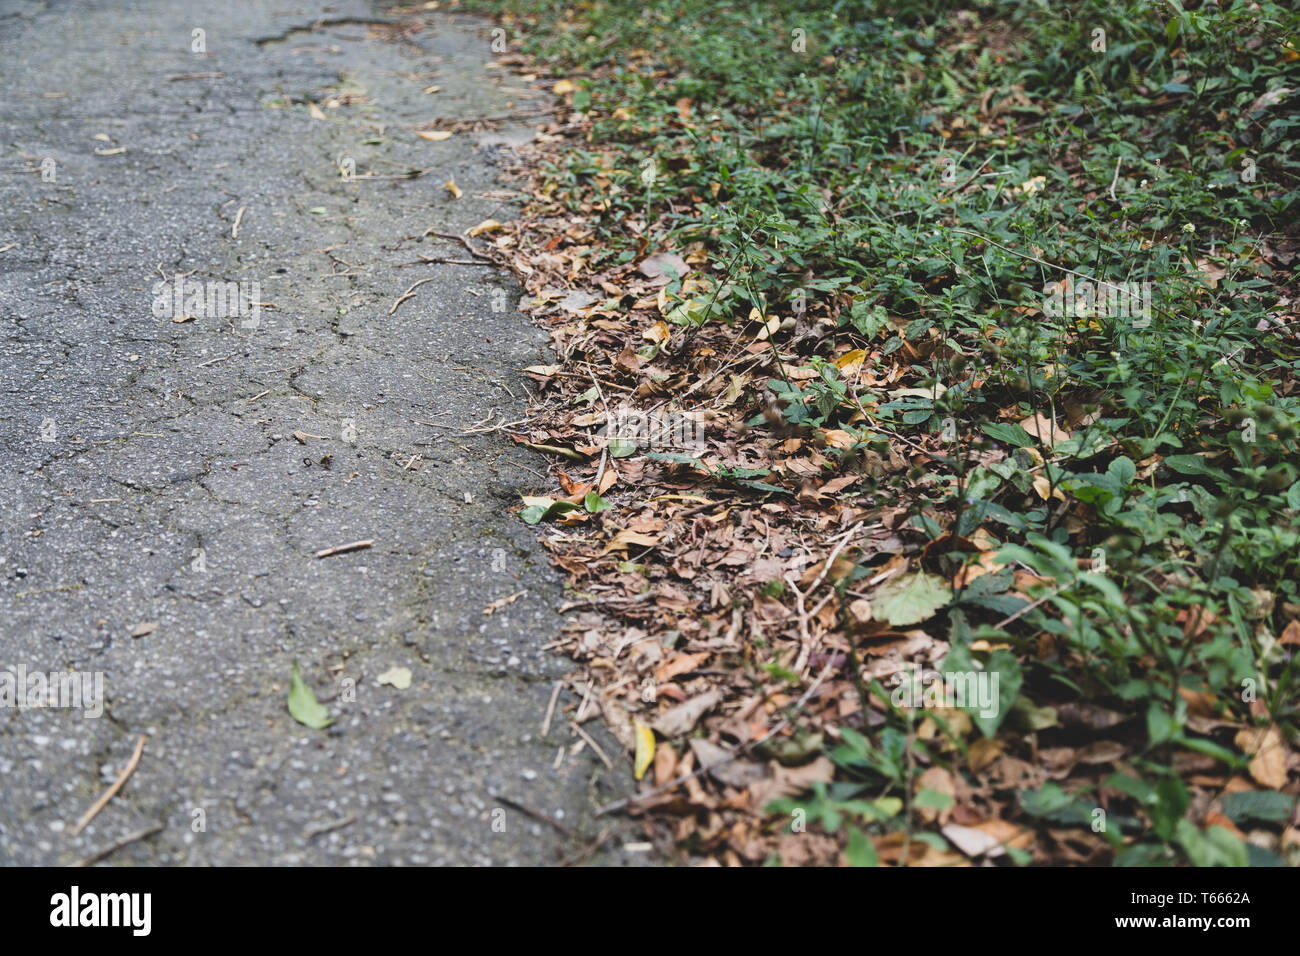 Asphalt Weg auf der Grenze zwischen Natur Boden. Konzepte: Urban, Natur Boden Kontrast; Grenze, Grenze, Auswahl, Kombination, Synthese Stockfoto